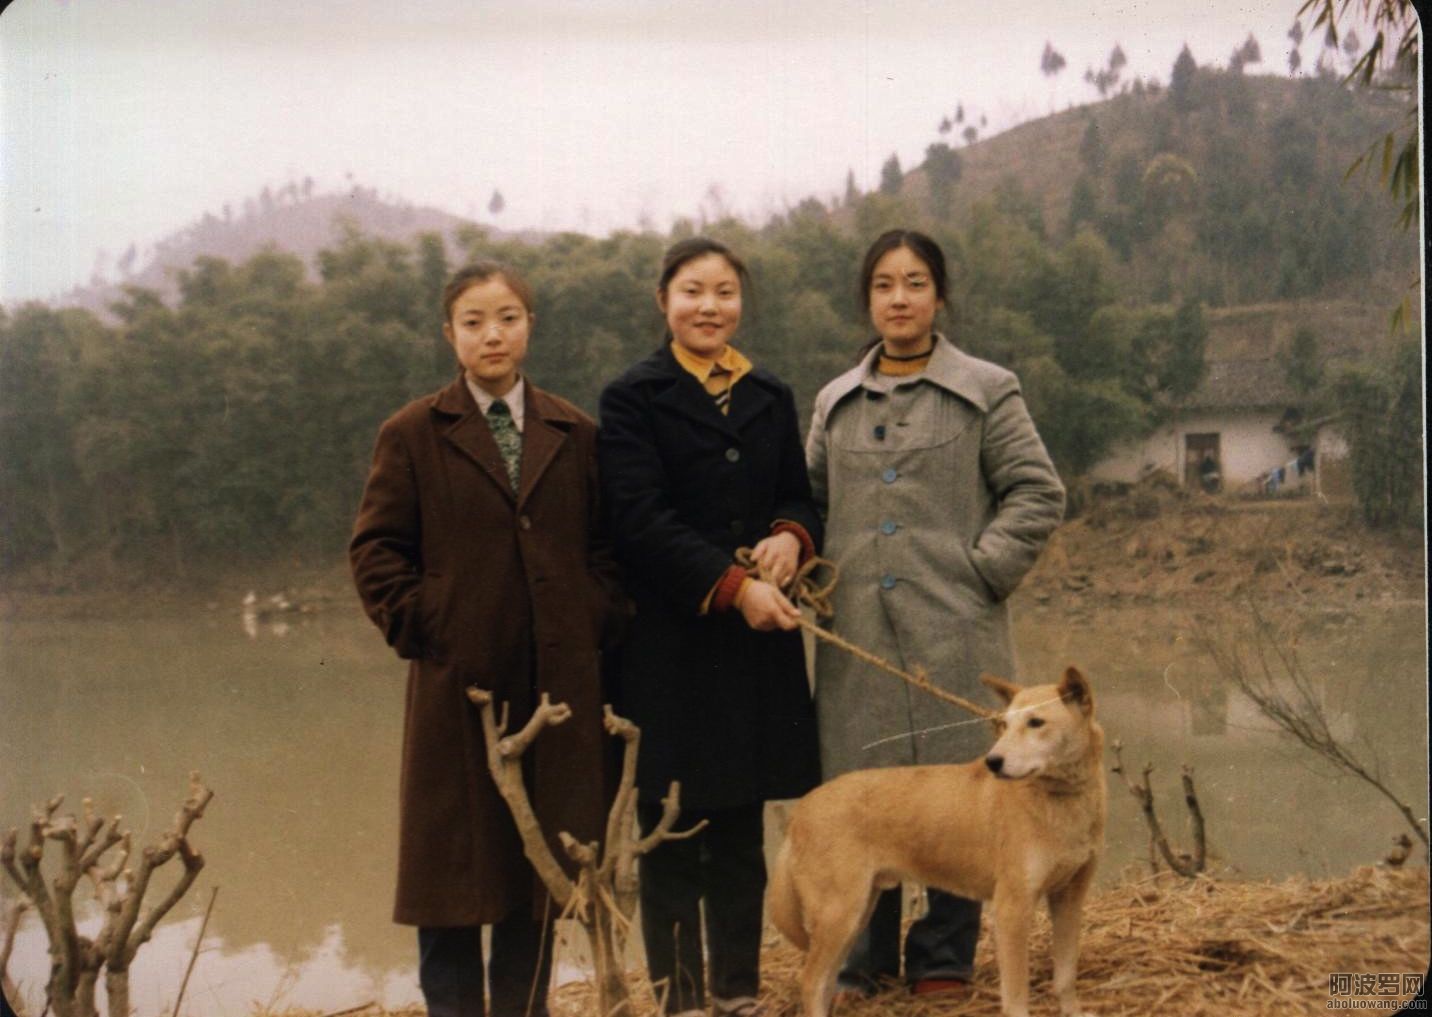 1-80 sisters in Zhongjiang.jpg